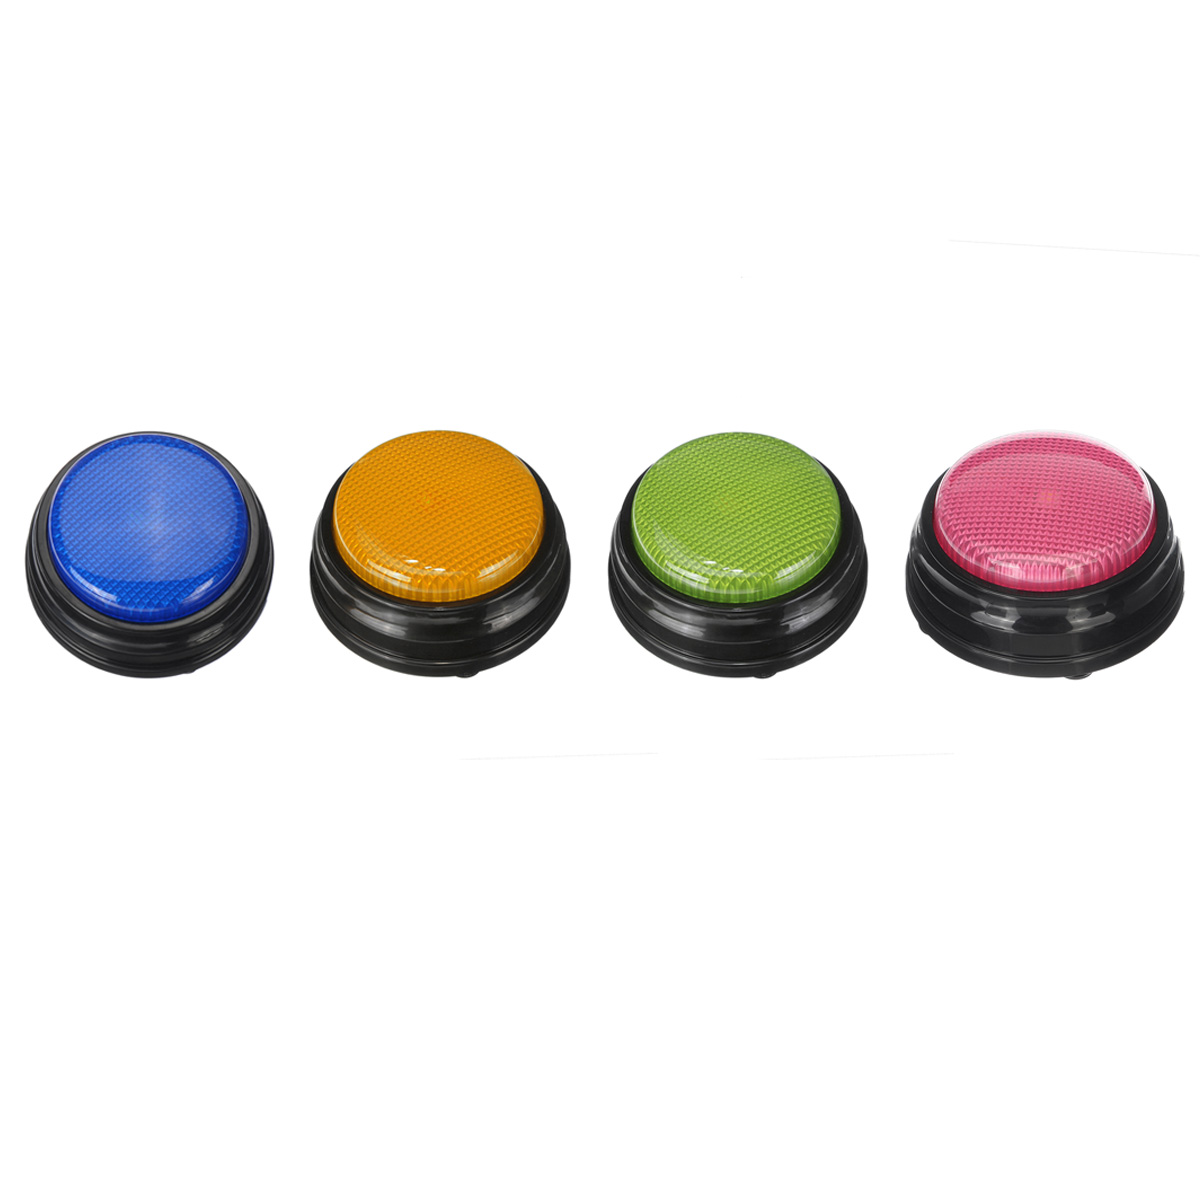 Recordable-Talking-Button-Game-Answer-Buzzer-Alarm-Button-4-Color-Suit-Luminous-Voice-Box-Luminous-S-1572637-9